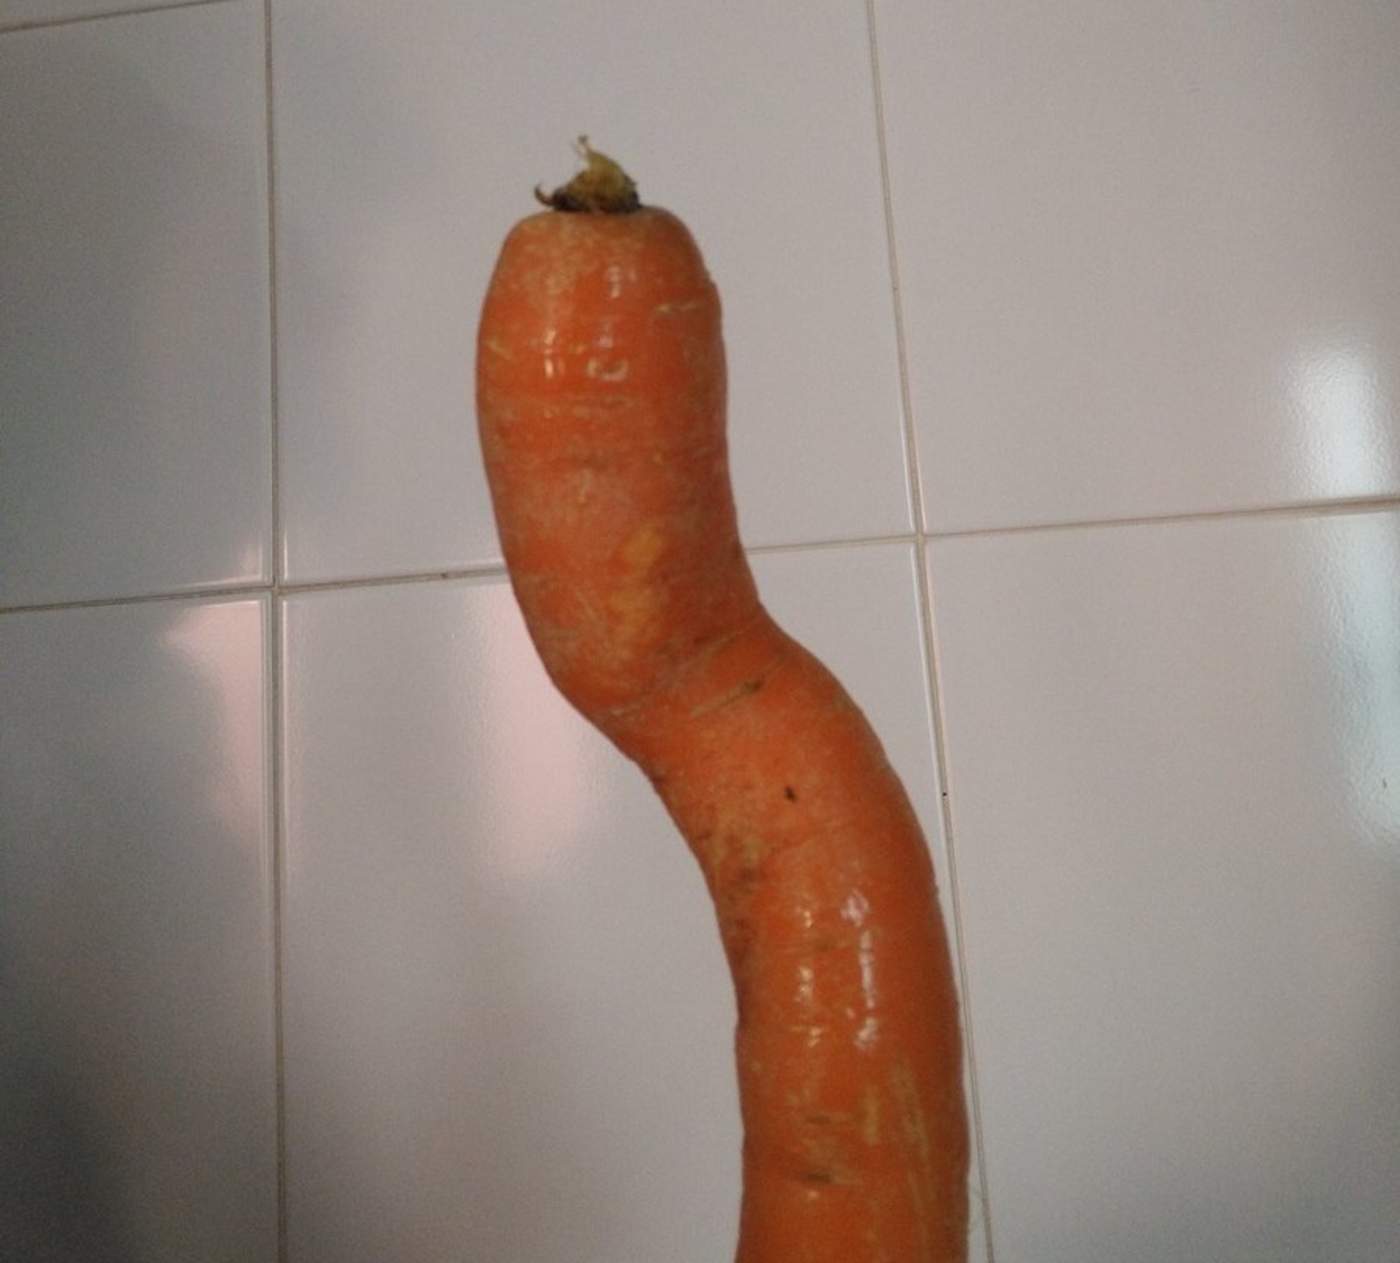 Zanahoria deforme se vuelve tendencia viral en Twitter